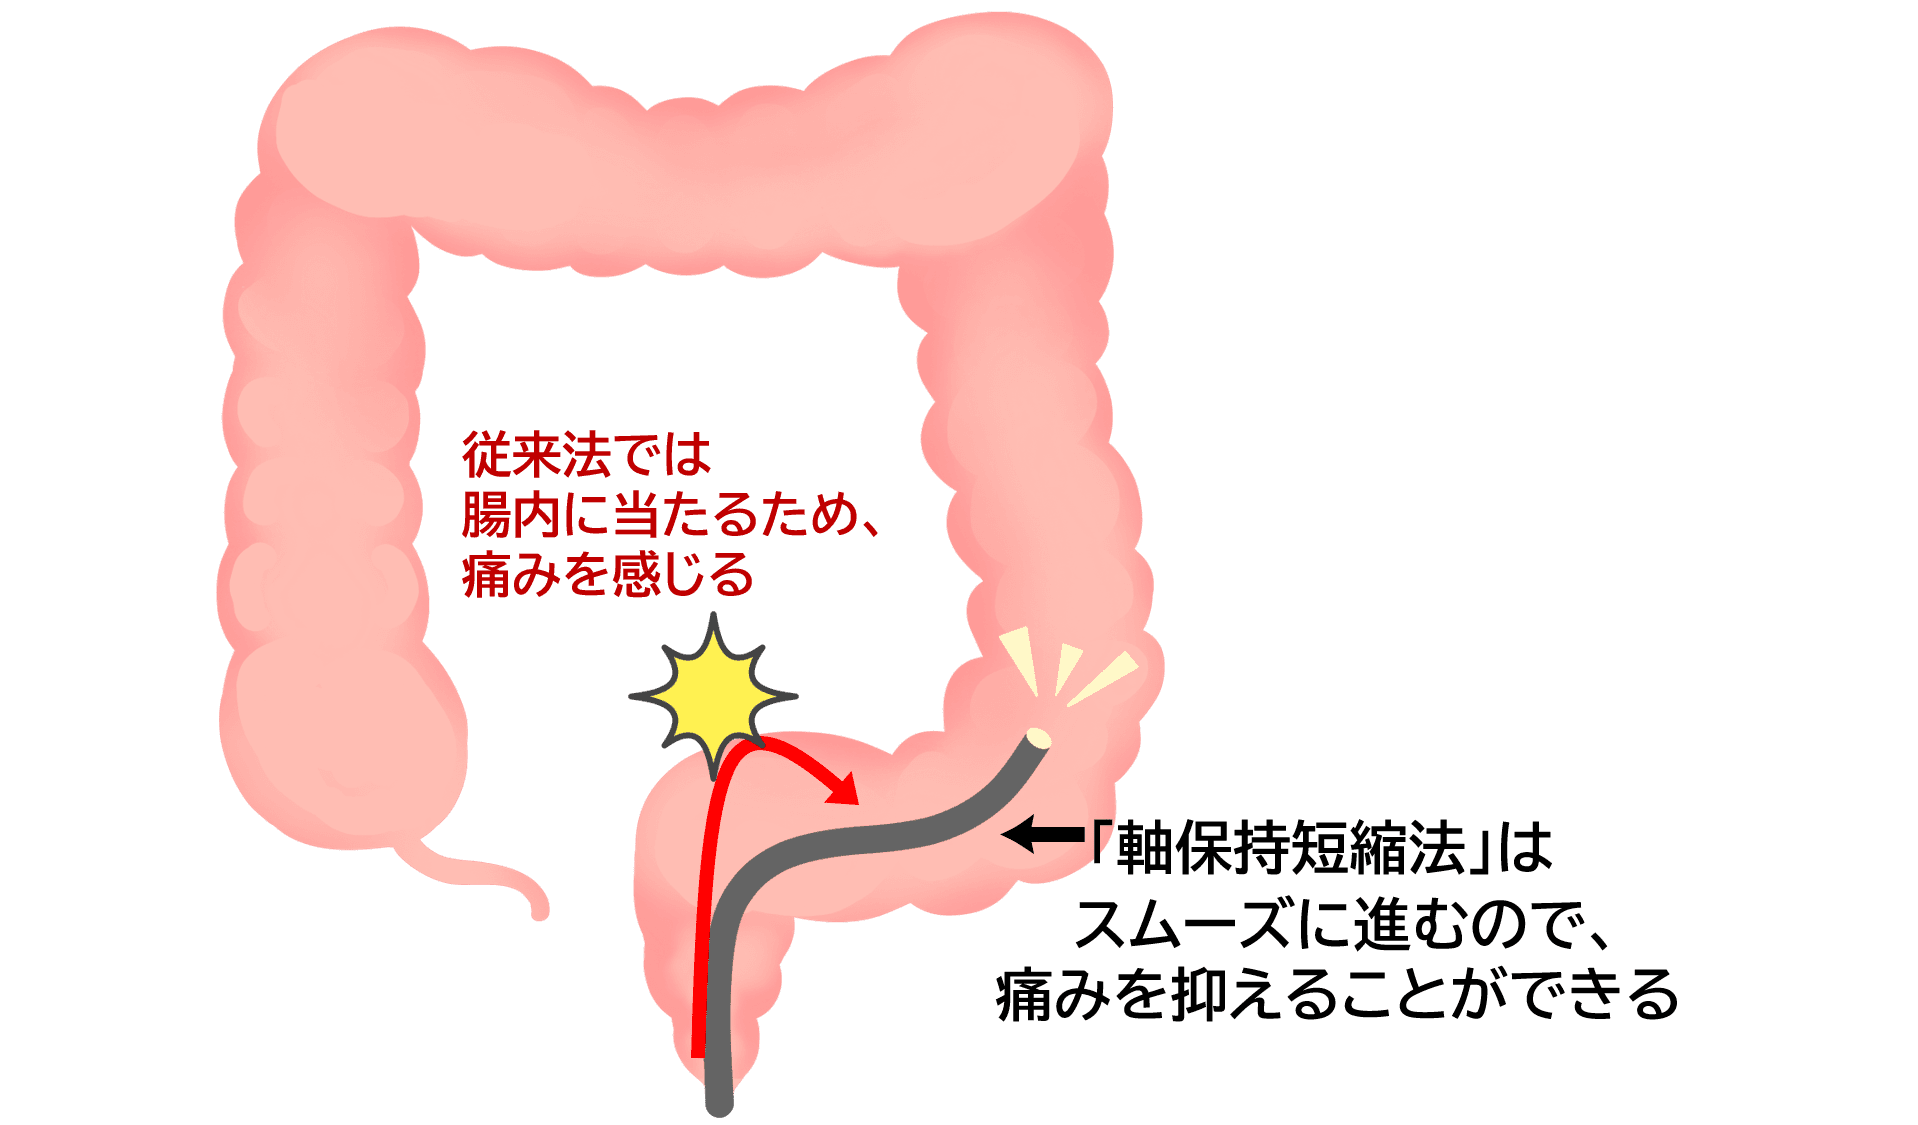 大腸内視鏡検査の軸保持短縮法